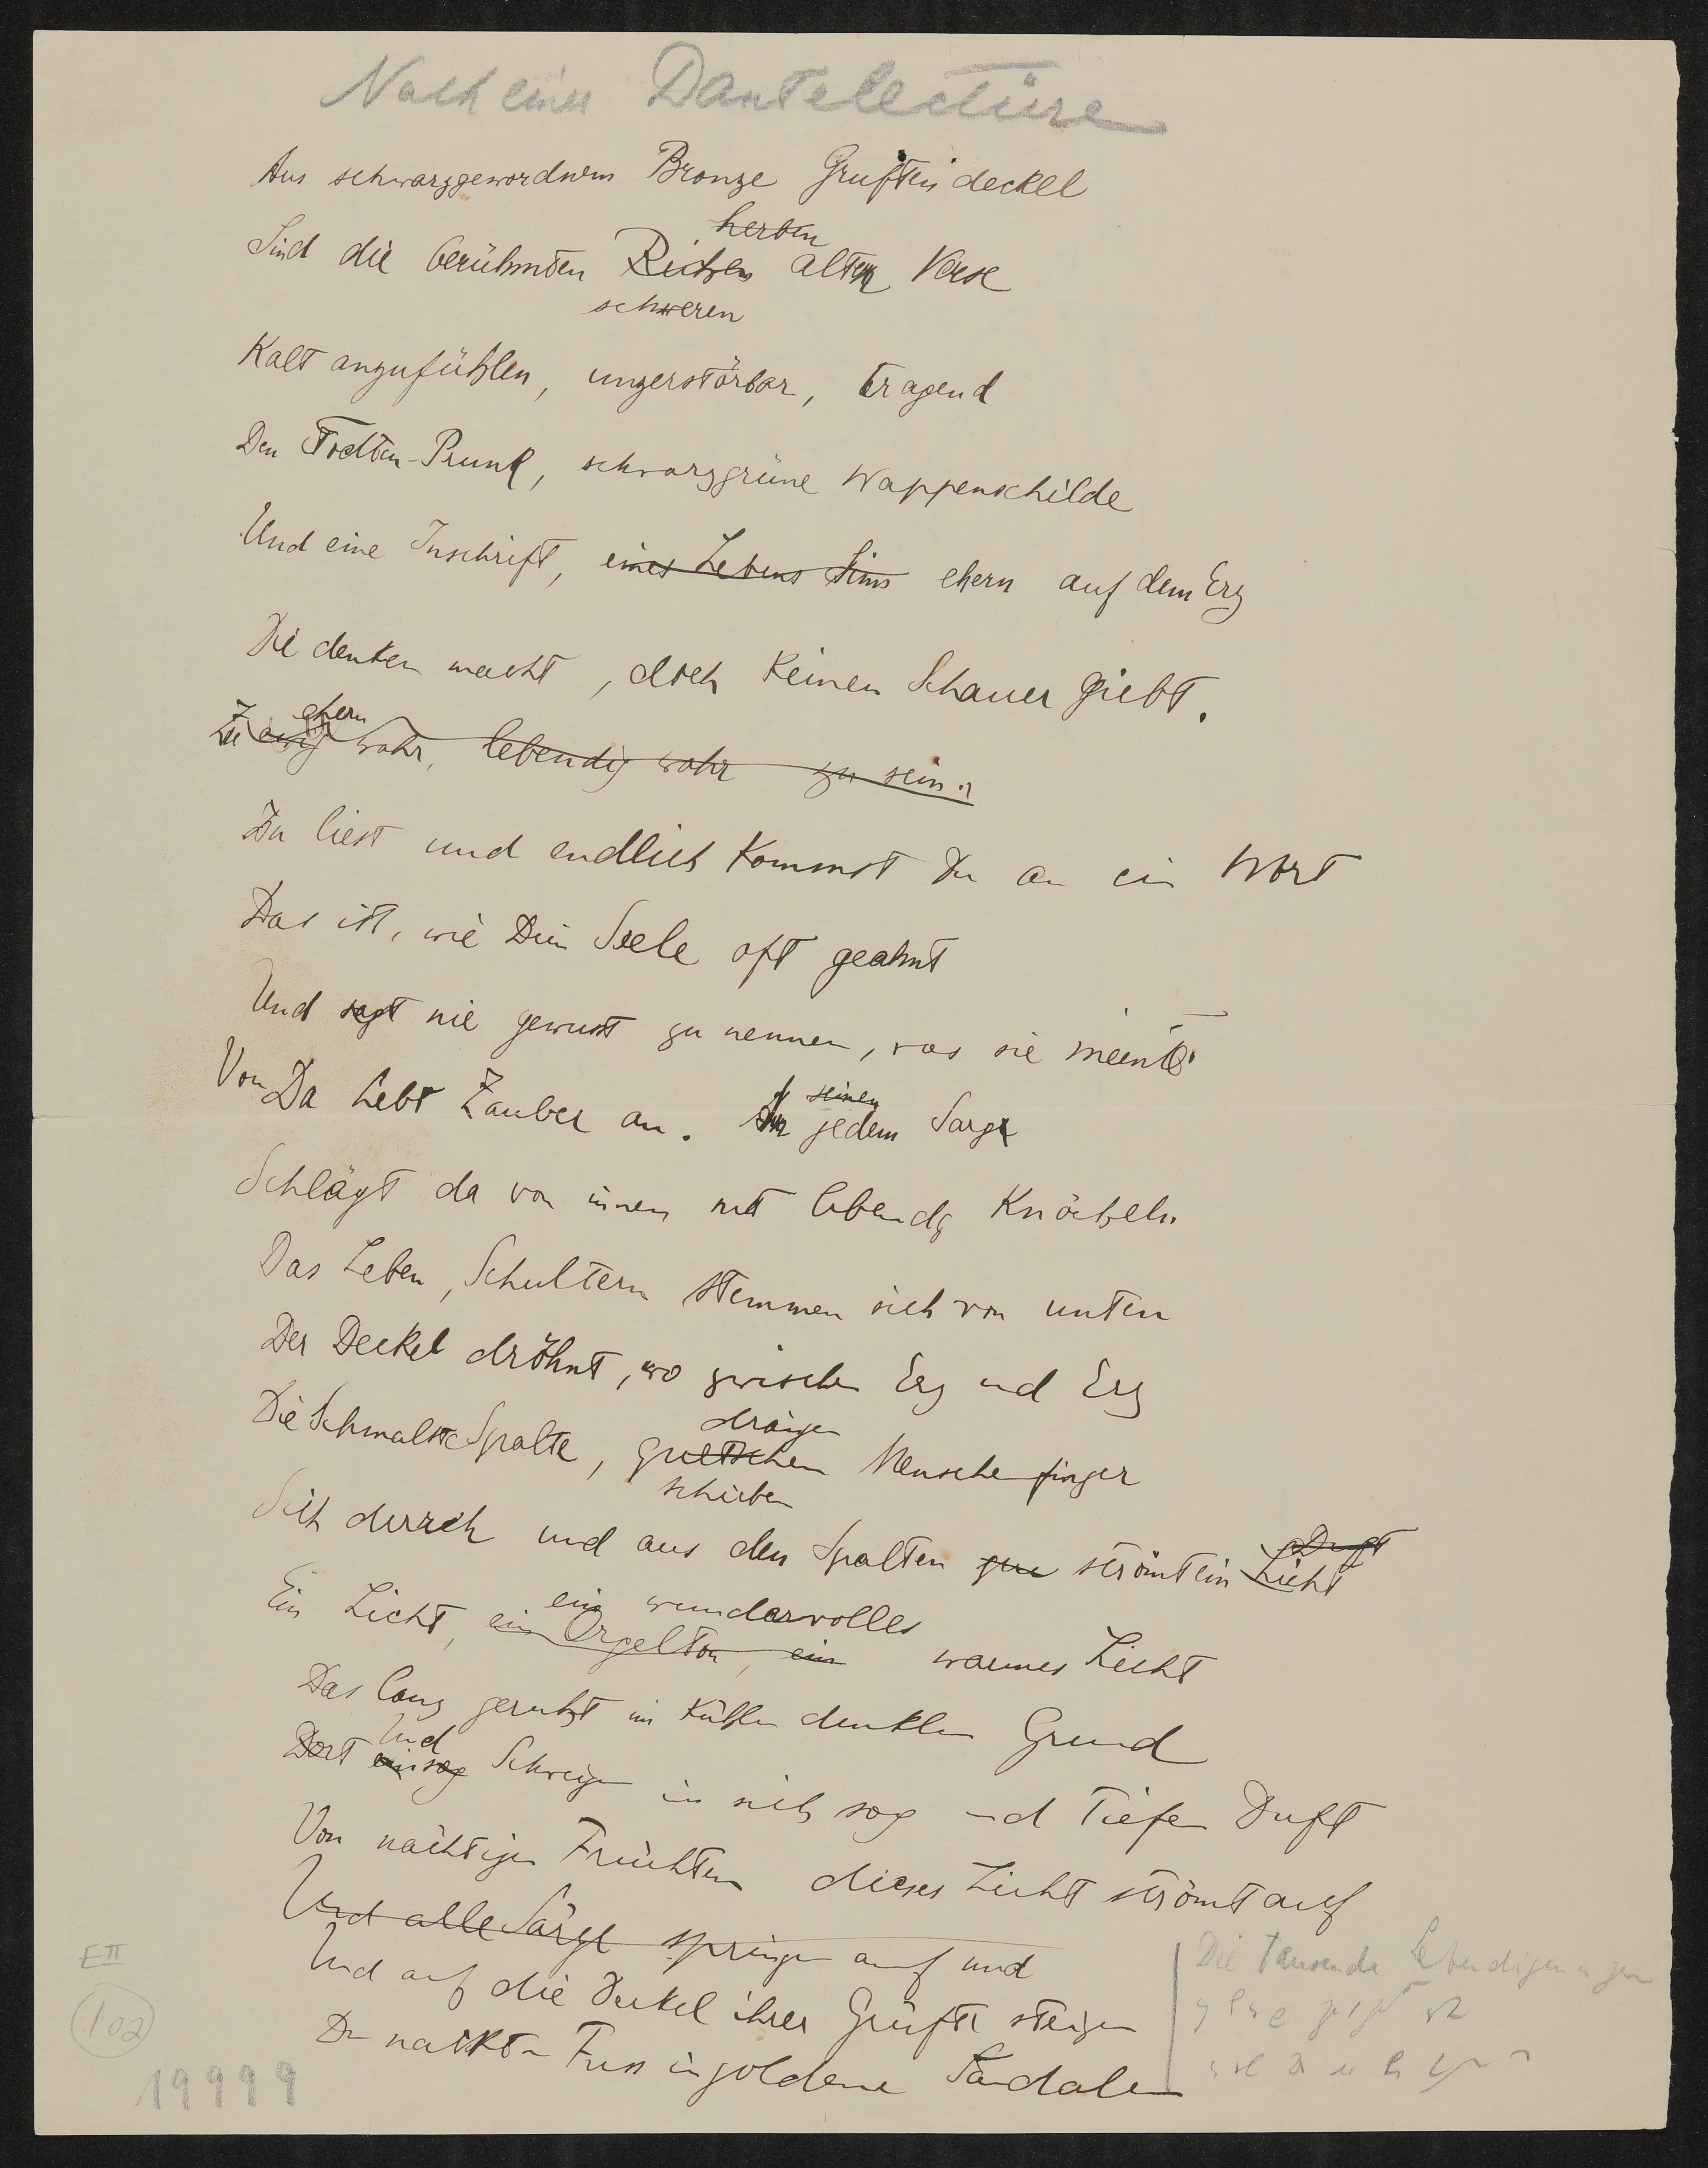 Gedicht: Nach einer Dantelectüre (Freies Deutsches Hochstift / Frankfurter Goethe-Museum Public Domain Mark)